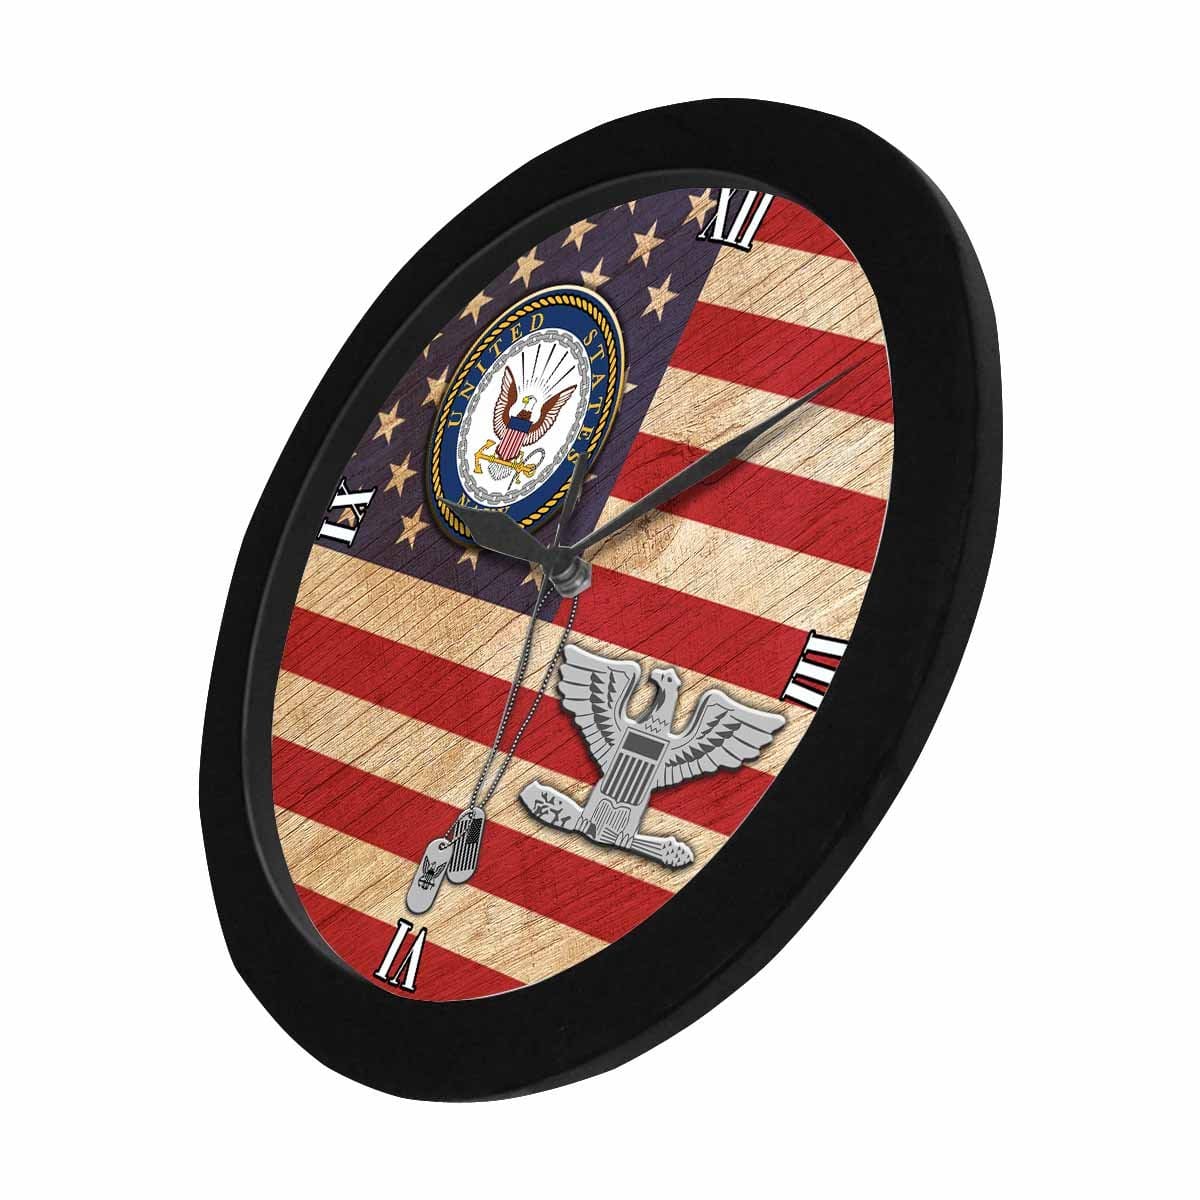 US Navy O-6 Captain O6 CAPT Senior Officer Wall Clock-WallClocks-Navy-Officer-Veterans Nation